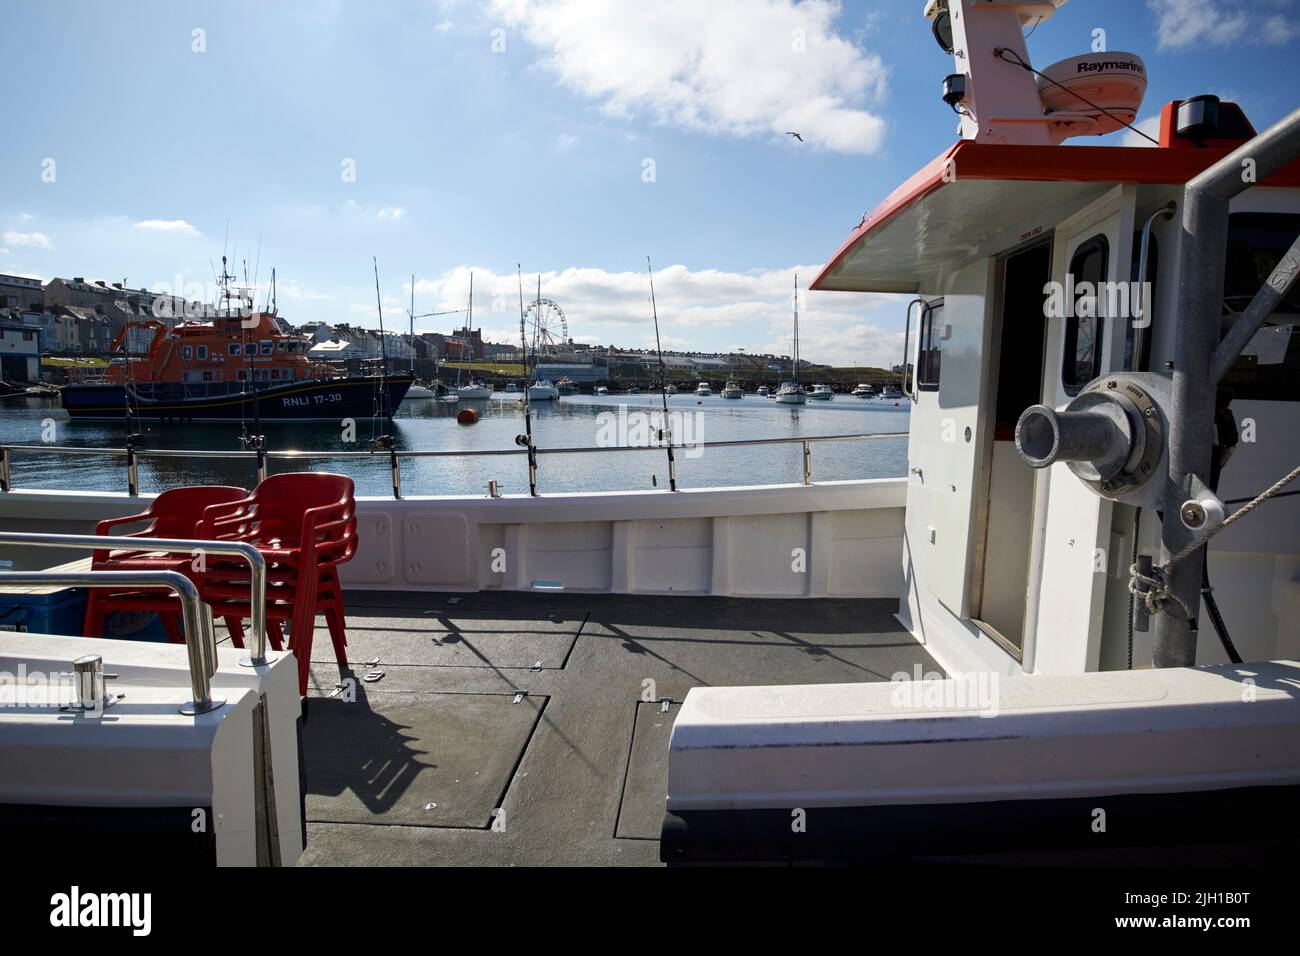 barco charter con acceso para discapacitados en el puerto de portrush, irlanda del norte, reino unido Foto de stock